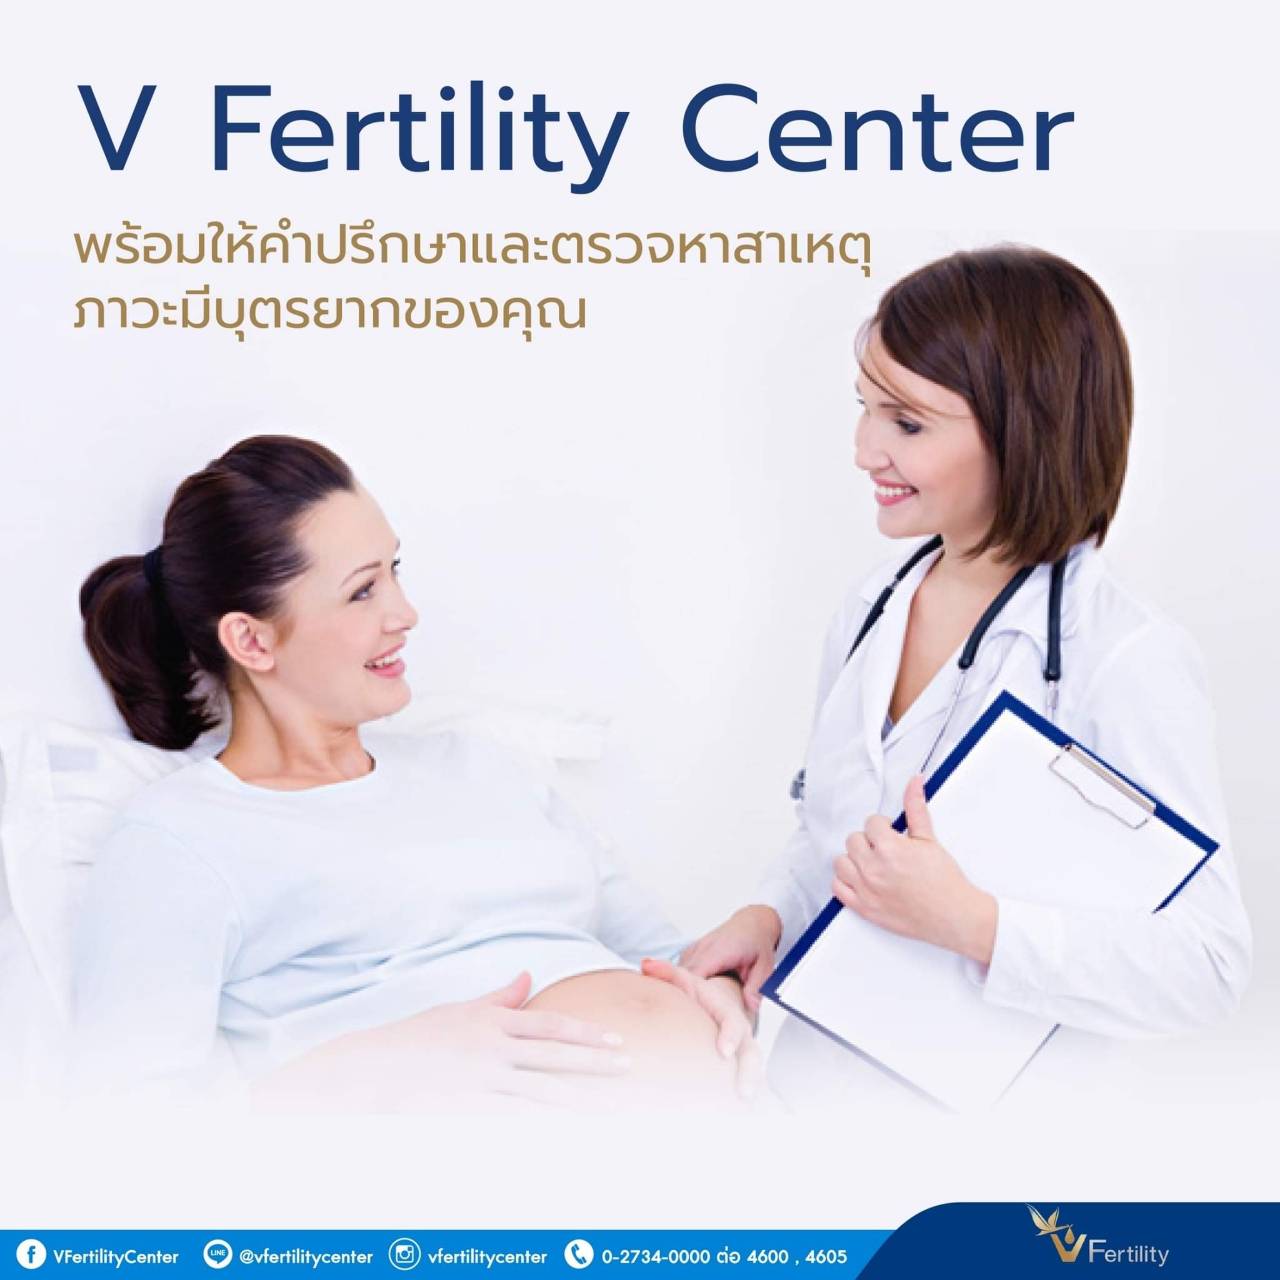 V Fertility Center พร้อมให้คำปรึกษา